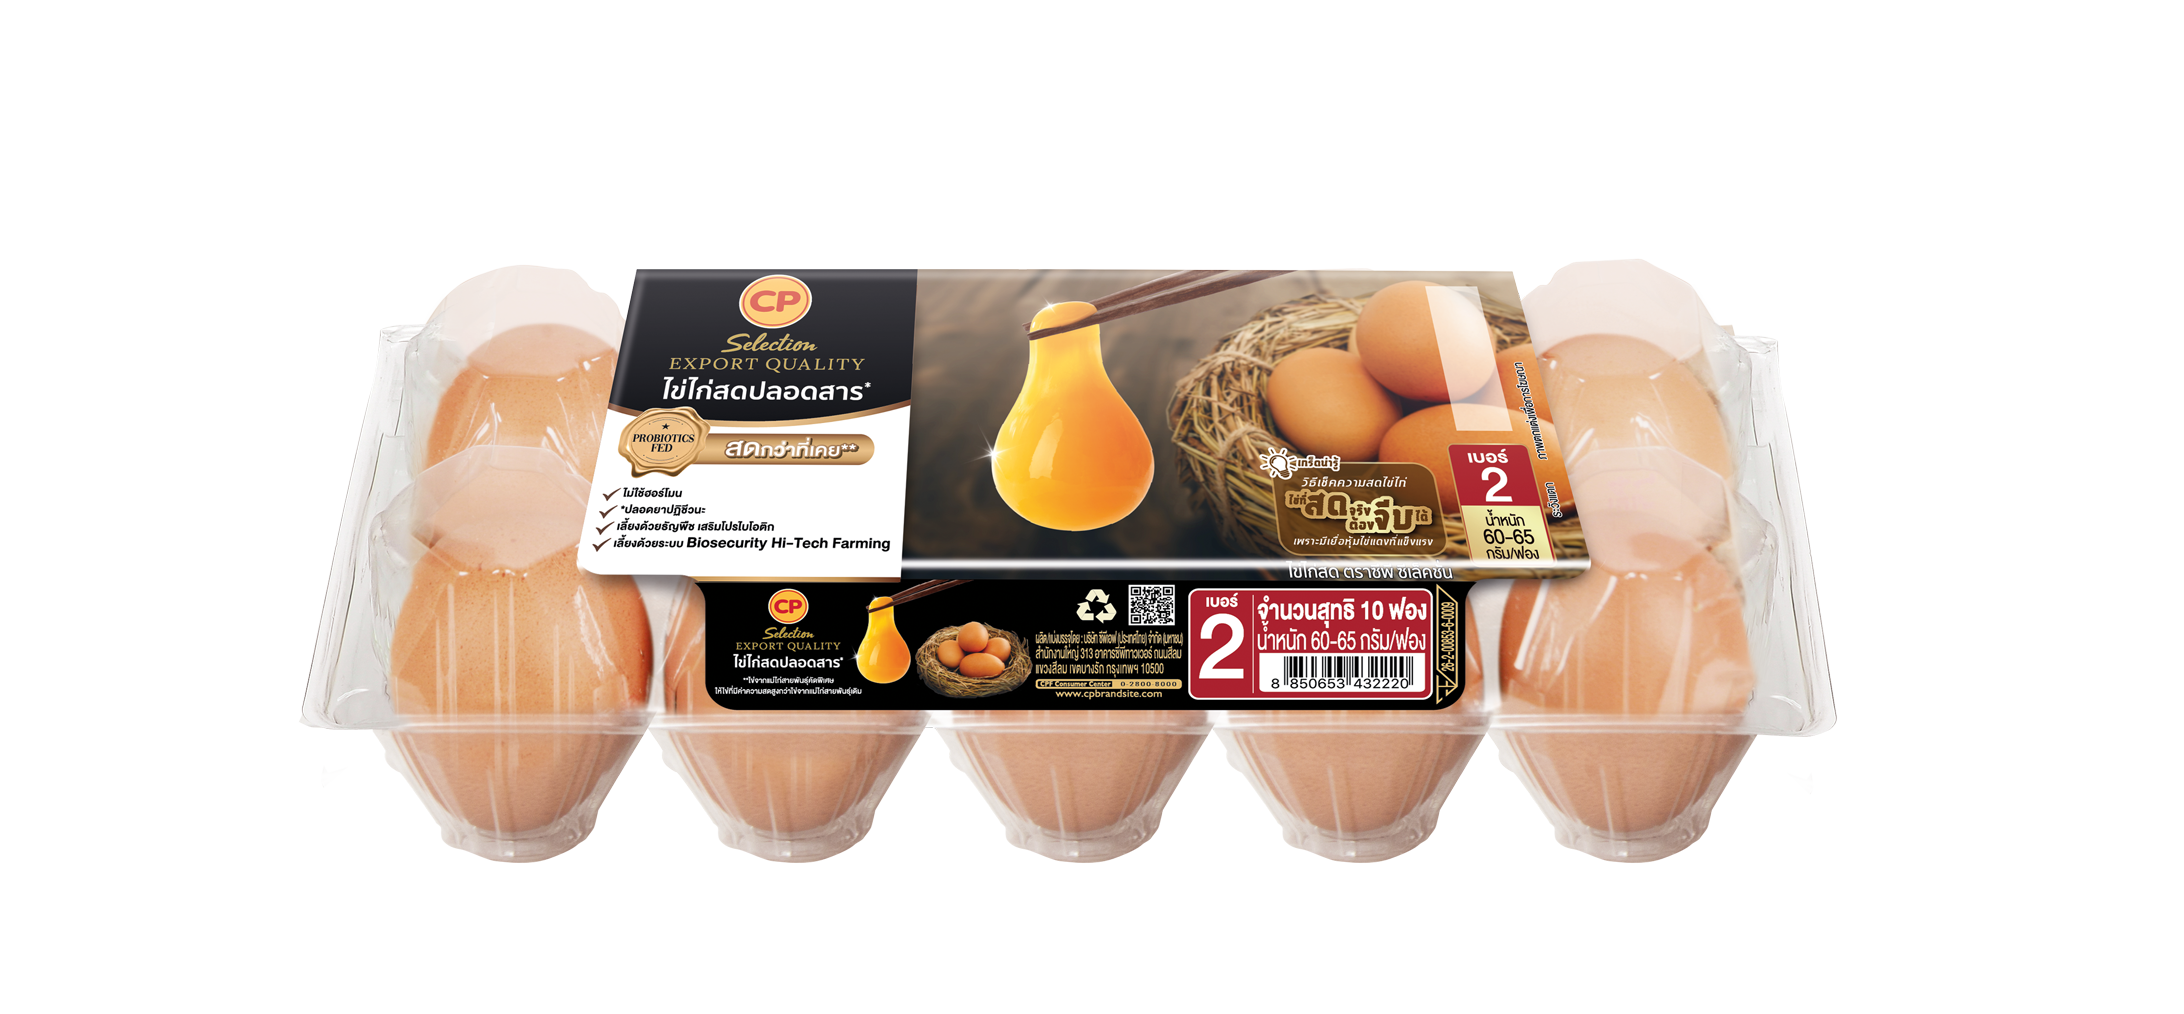 ซีพีเอฟ มุ่งมั่นพัฒนาอาหารดีต่อใจ ดีต่อโลก เปิดตัวถาดไข่ไก่ทำจากพลาสติกรีไซเคิล 100% 